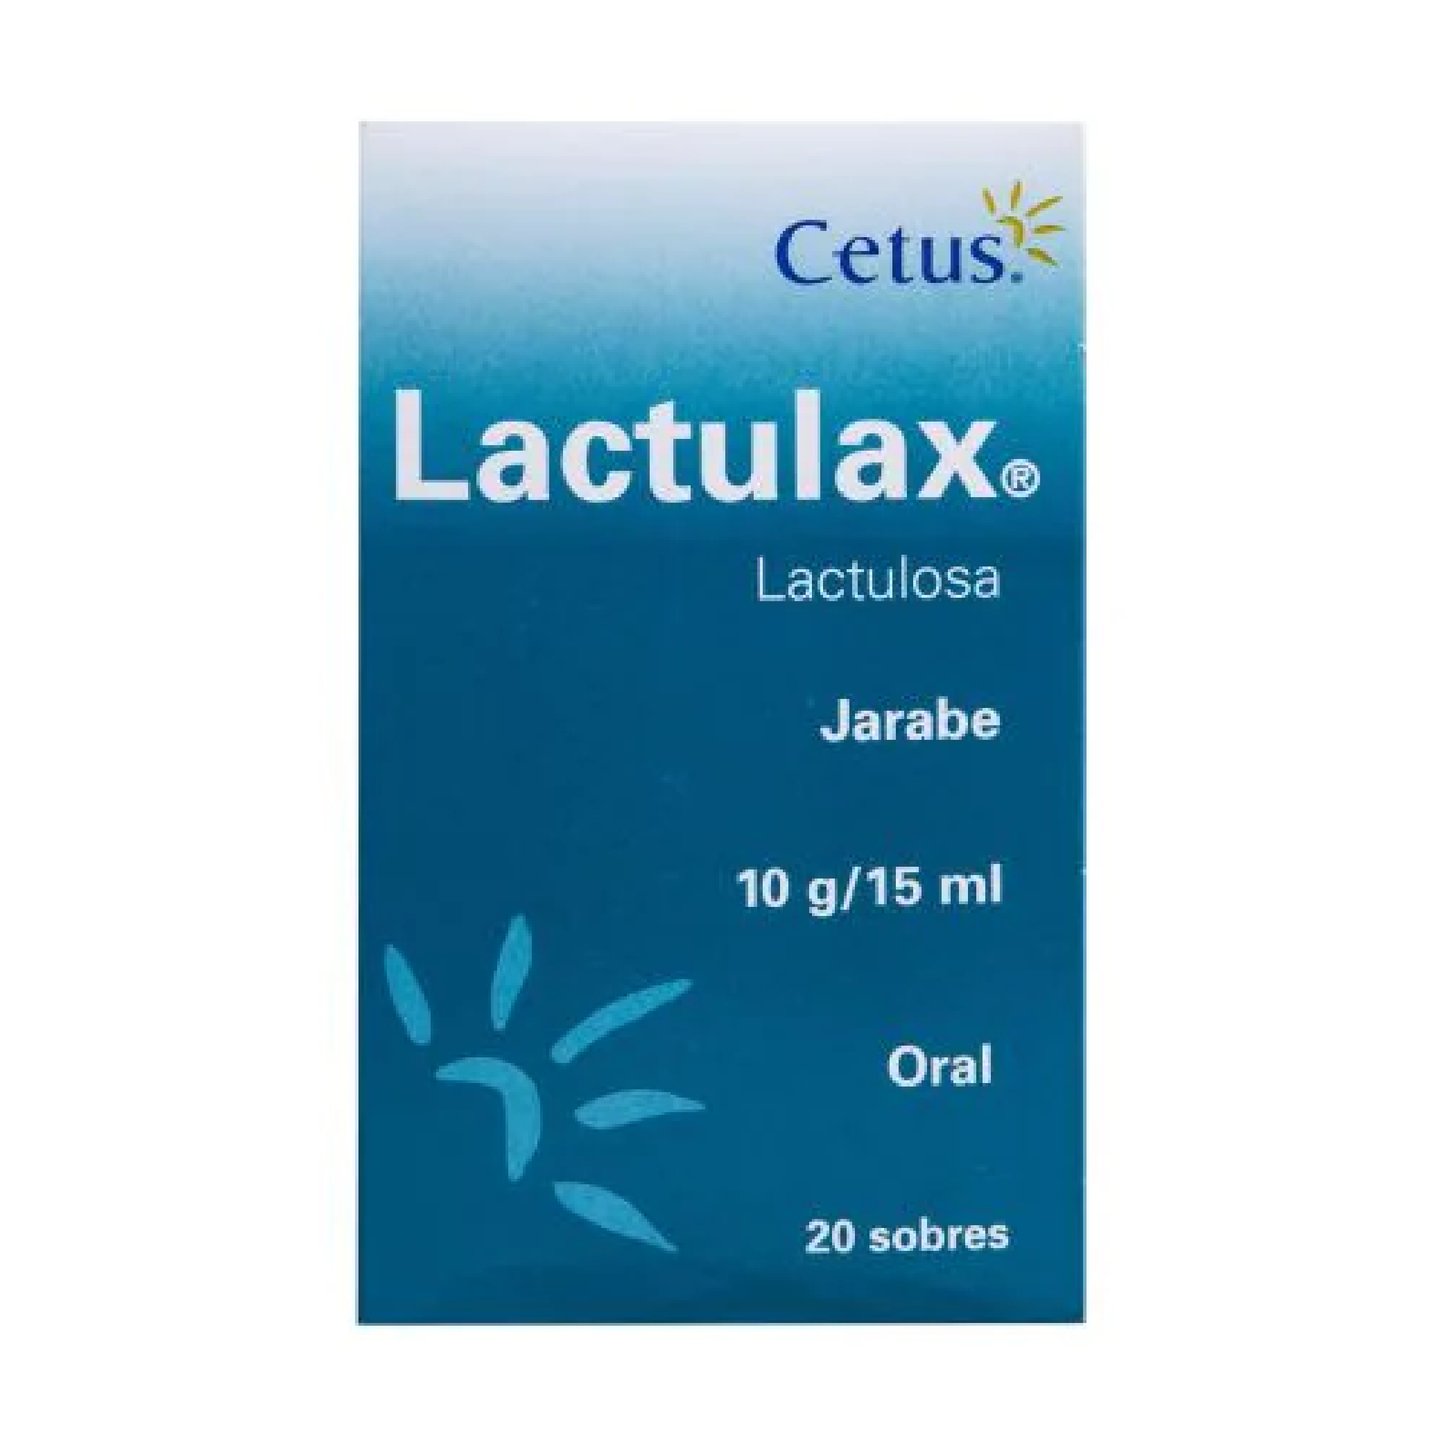 Lactulax (Lactulosa) Jar 10g/15ml Fco 500 ml